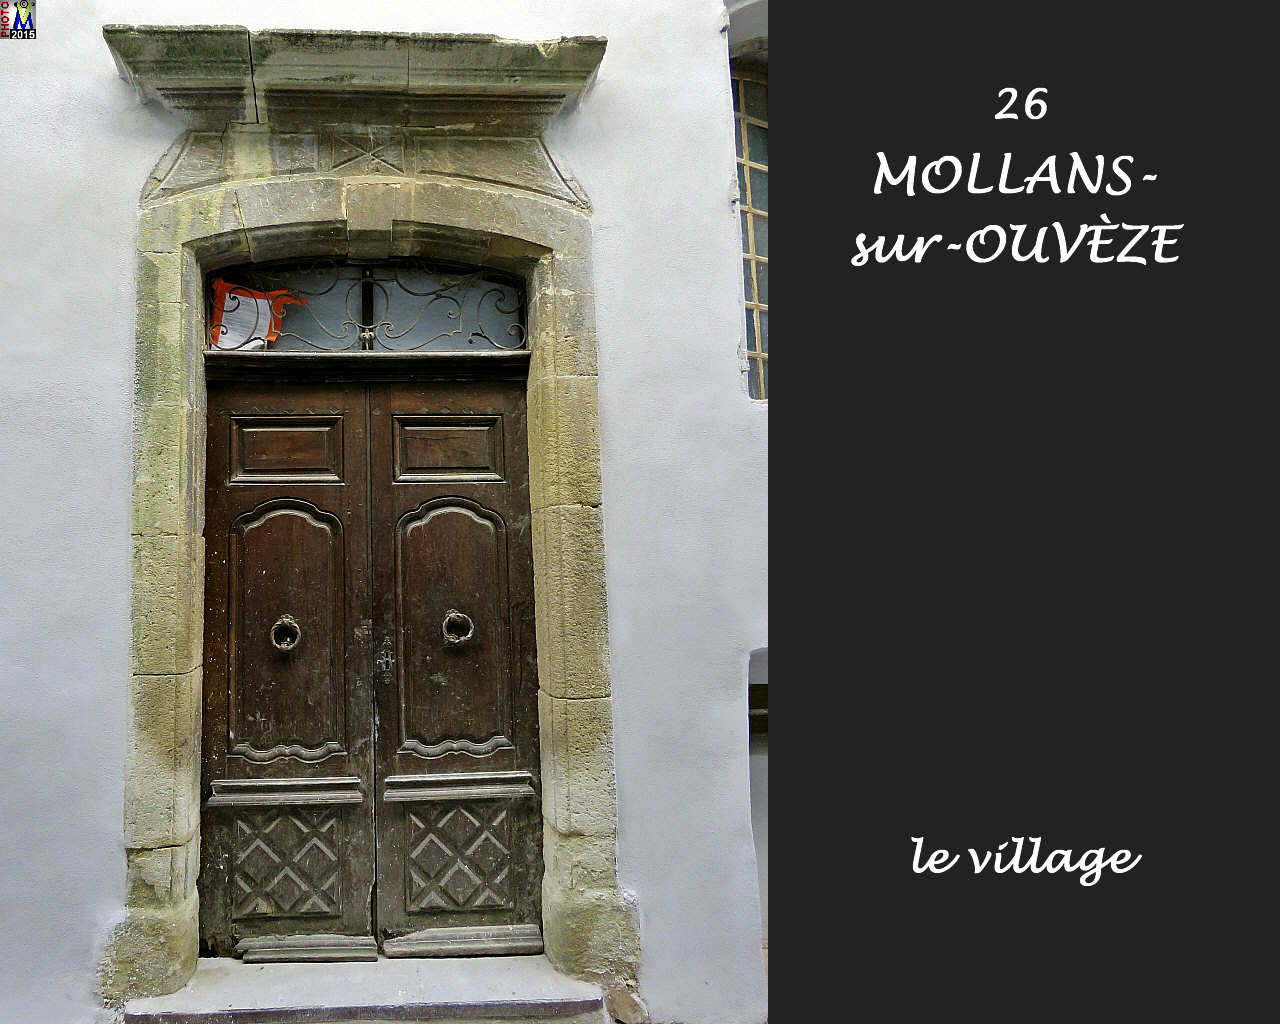 26MOLLANS-OUVEZE_village_108.jpg